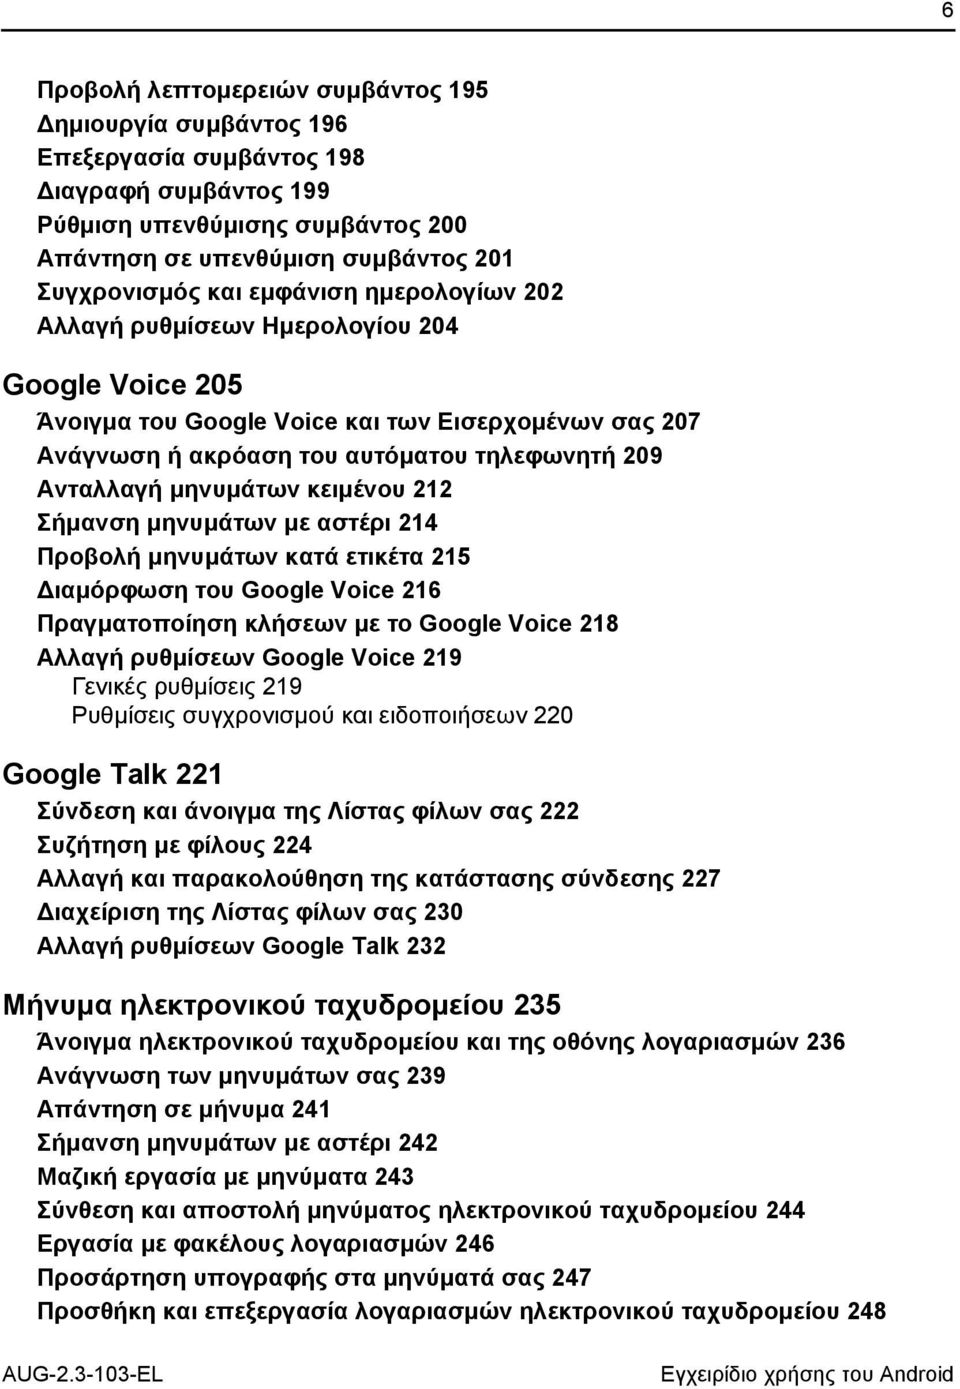 κειμένου 212 Σήμανση μηνυμάτων με αστέρι 214 Προβολή μηνυμάτων κατά ετικέτα 215 Διαμόρφωση του Google Voice 216 Πραγματοποίηση κλήσεων με το Google Voice 218 Αλλαγή ρυθμίσεων Google Voice 219 Γενικές